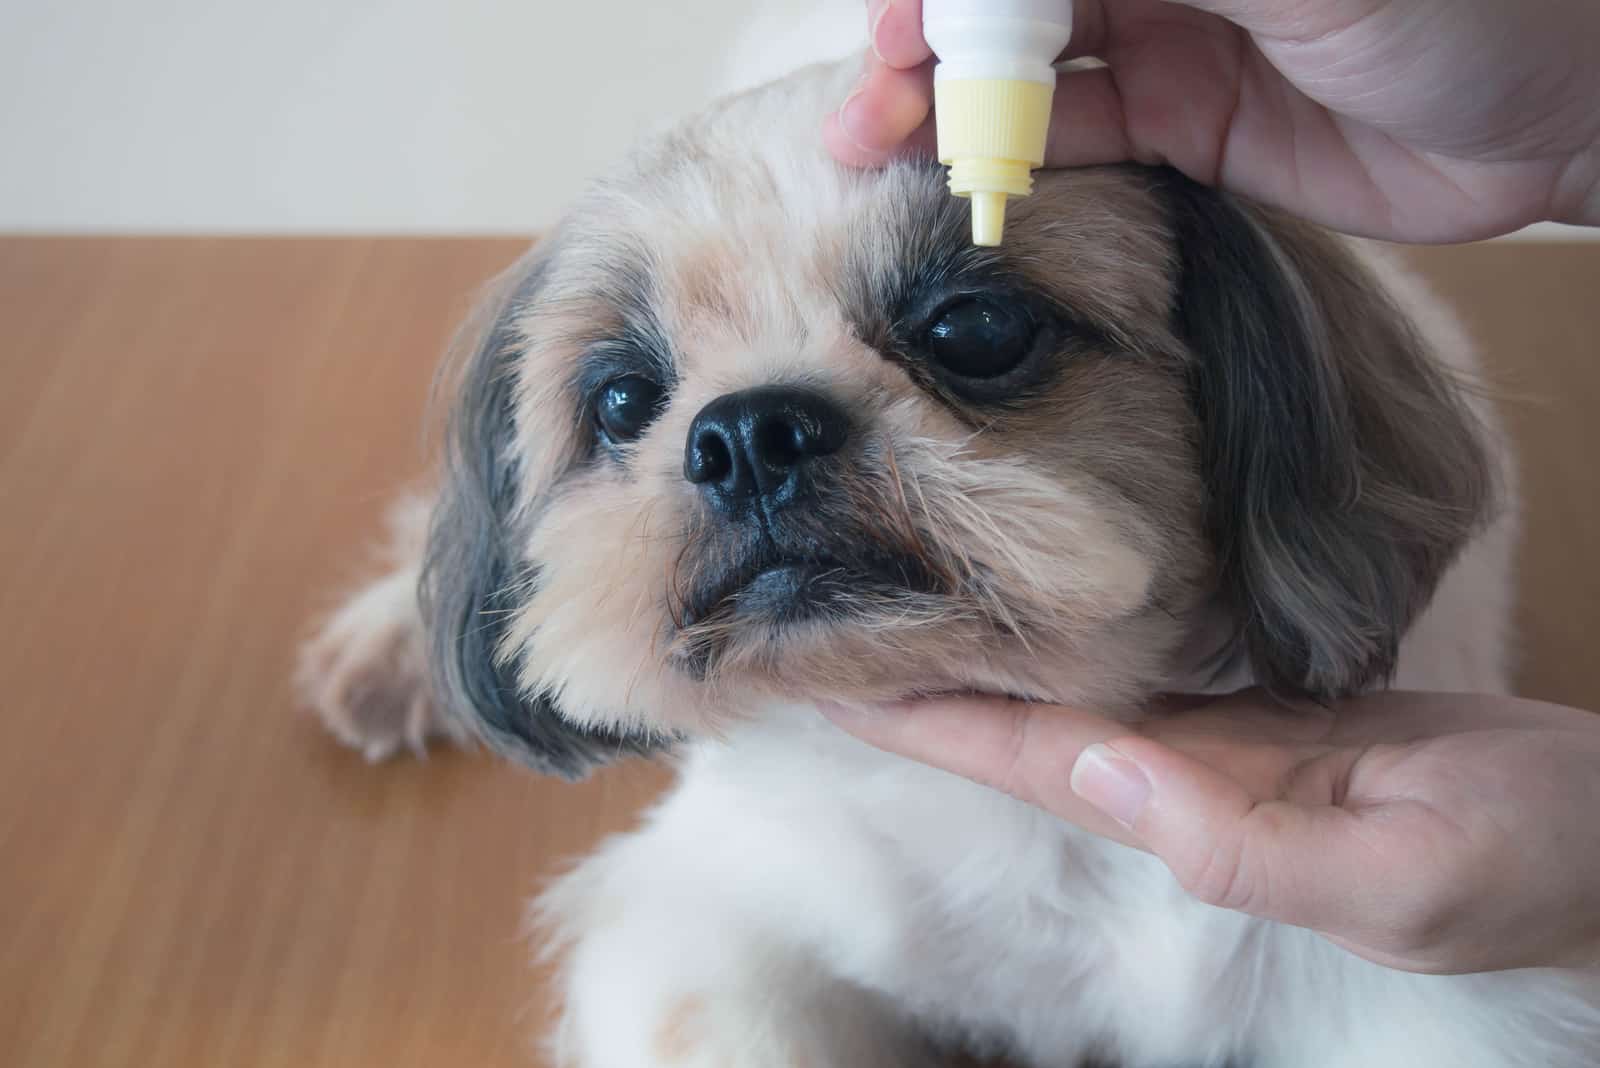 Hand, die medizinische Augentropfen auf die Augen des Shih Tzu-Hundes aufträgt